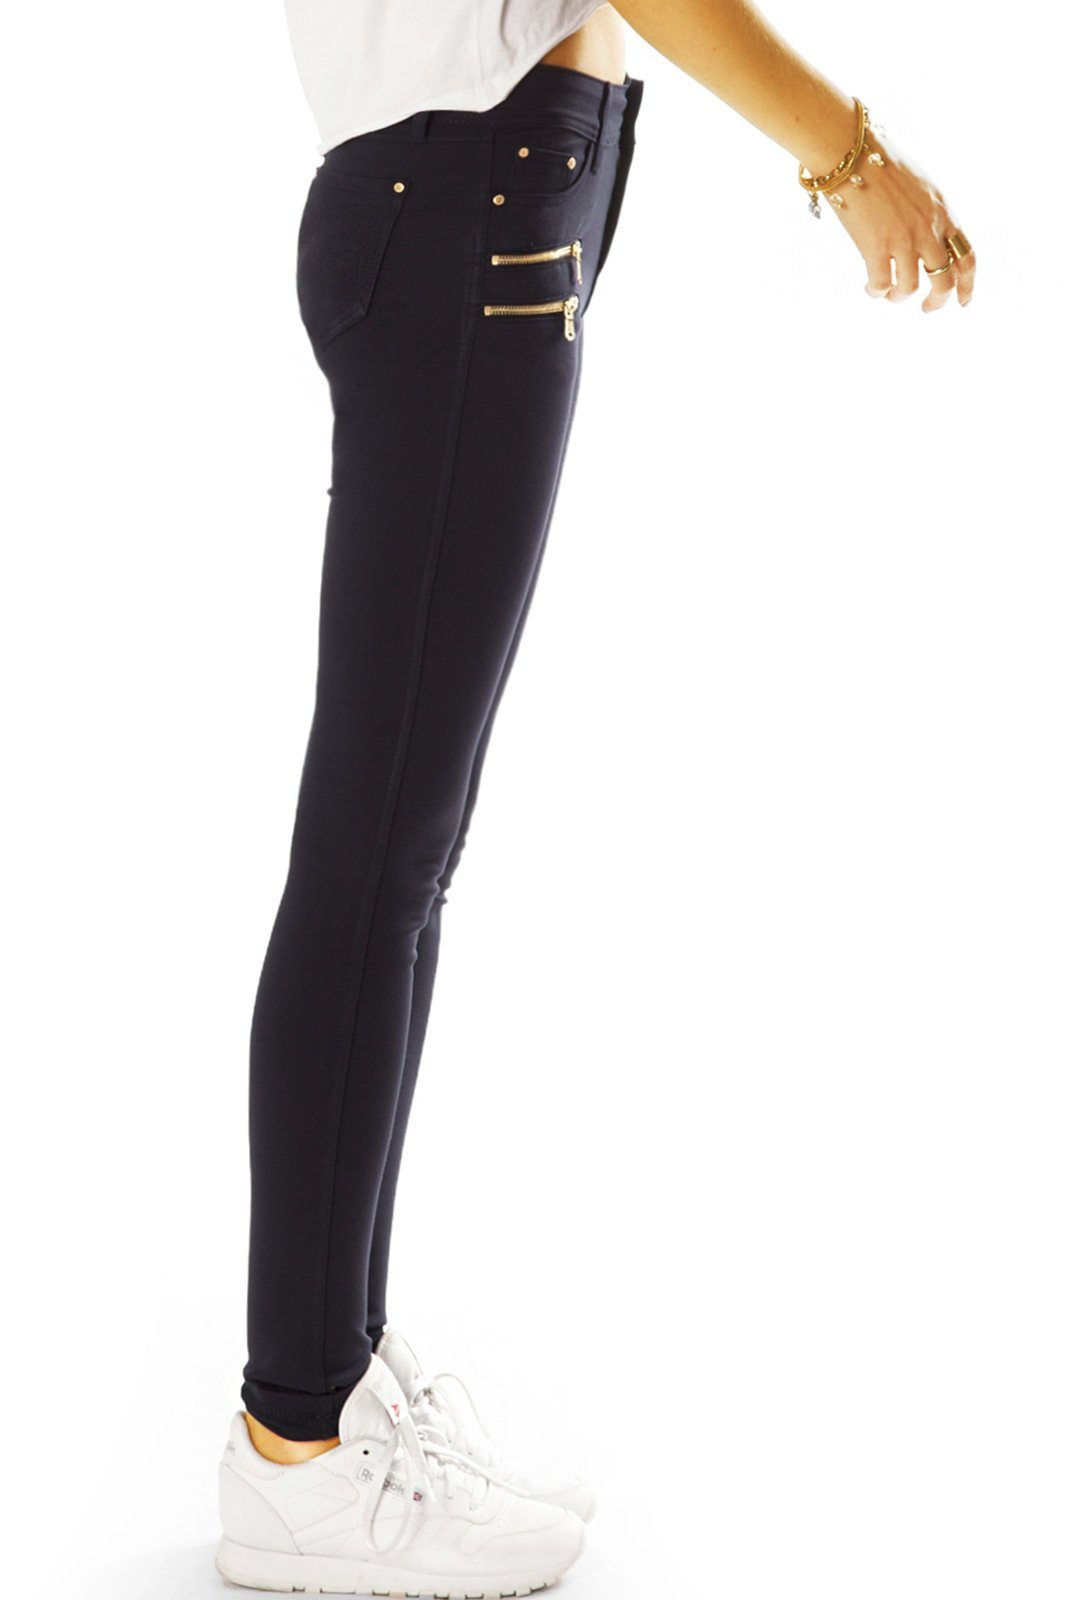 j39g-2 - Röhren be in Unifarben styled Stretch - - schwarz Stretch-Hose Damen Elegante Hose Klassische Stoffhose